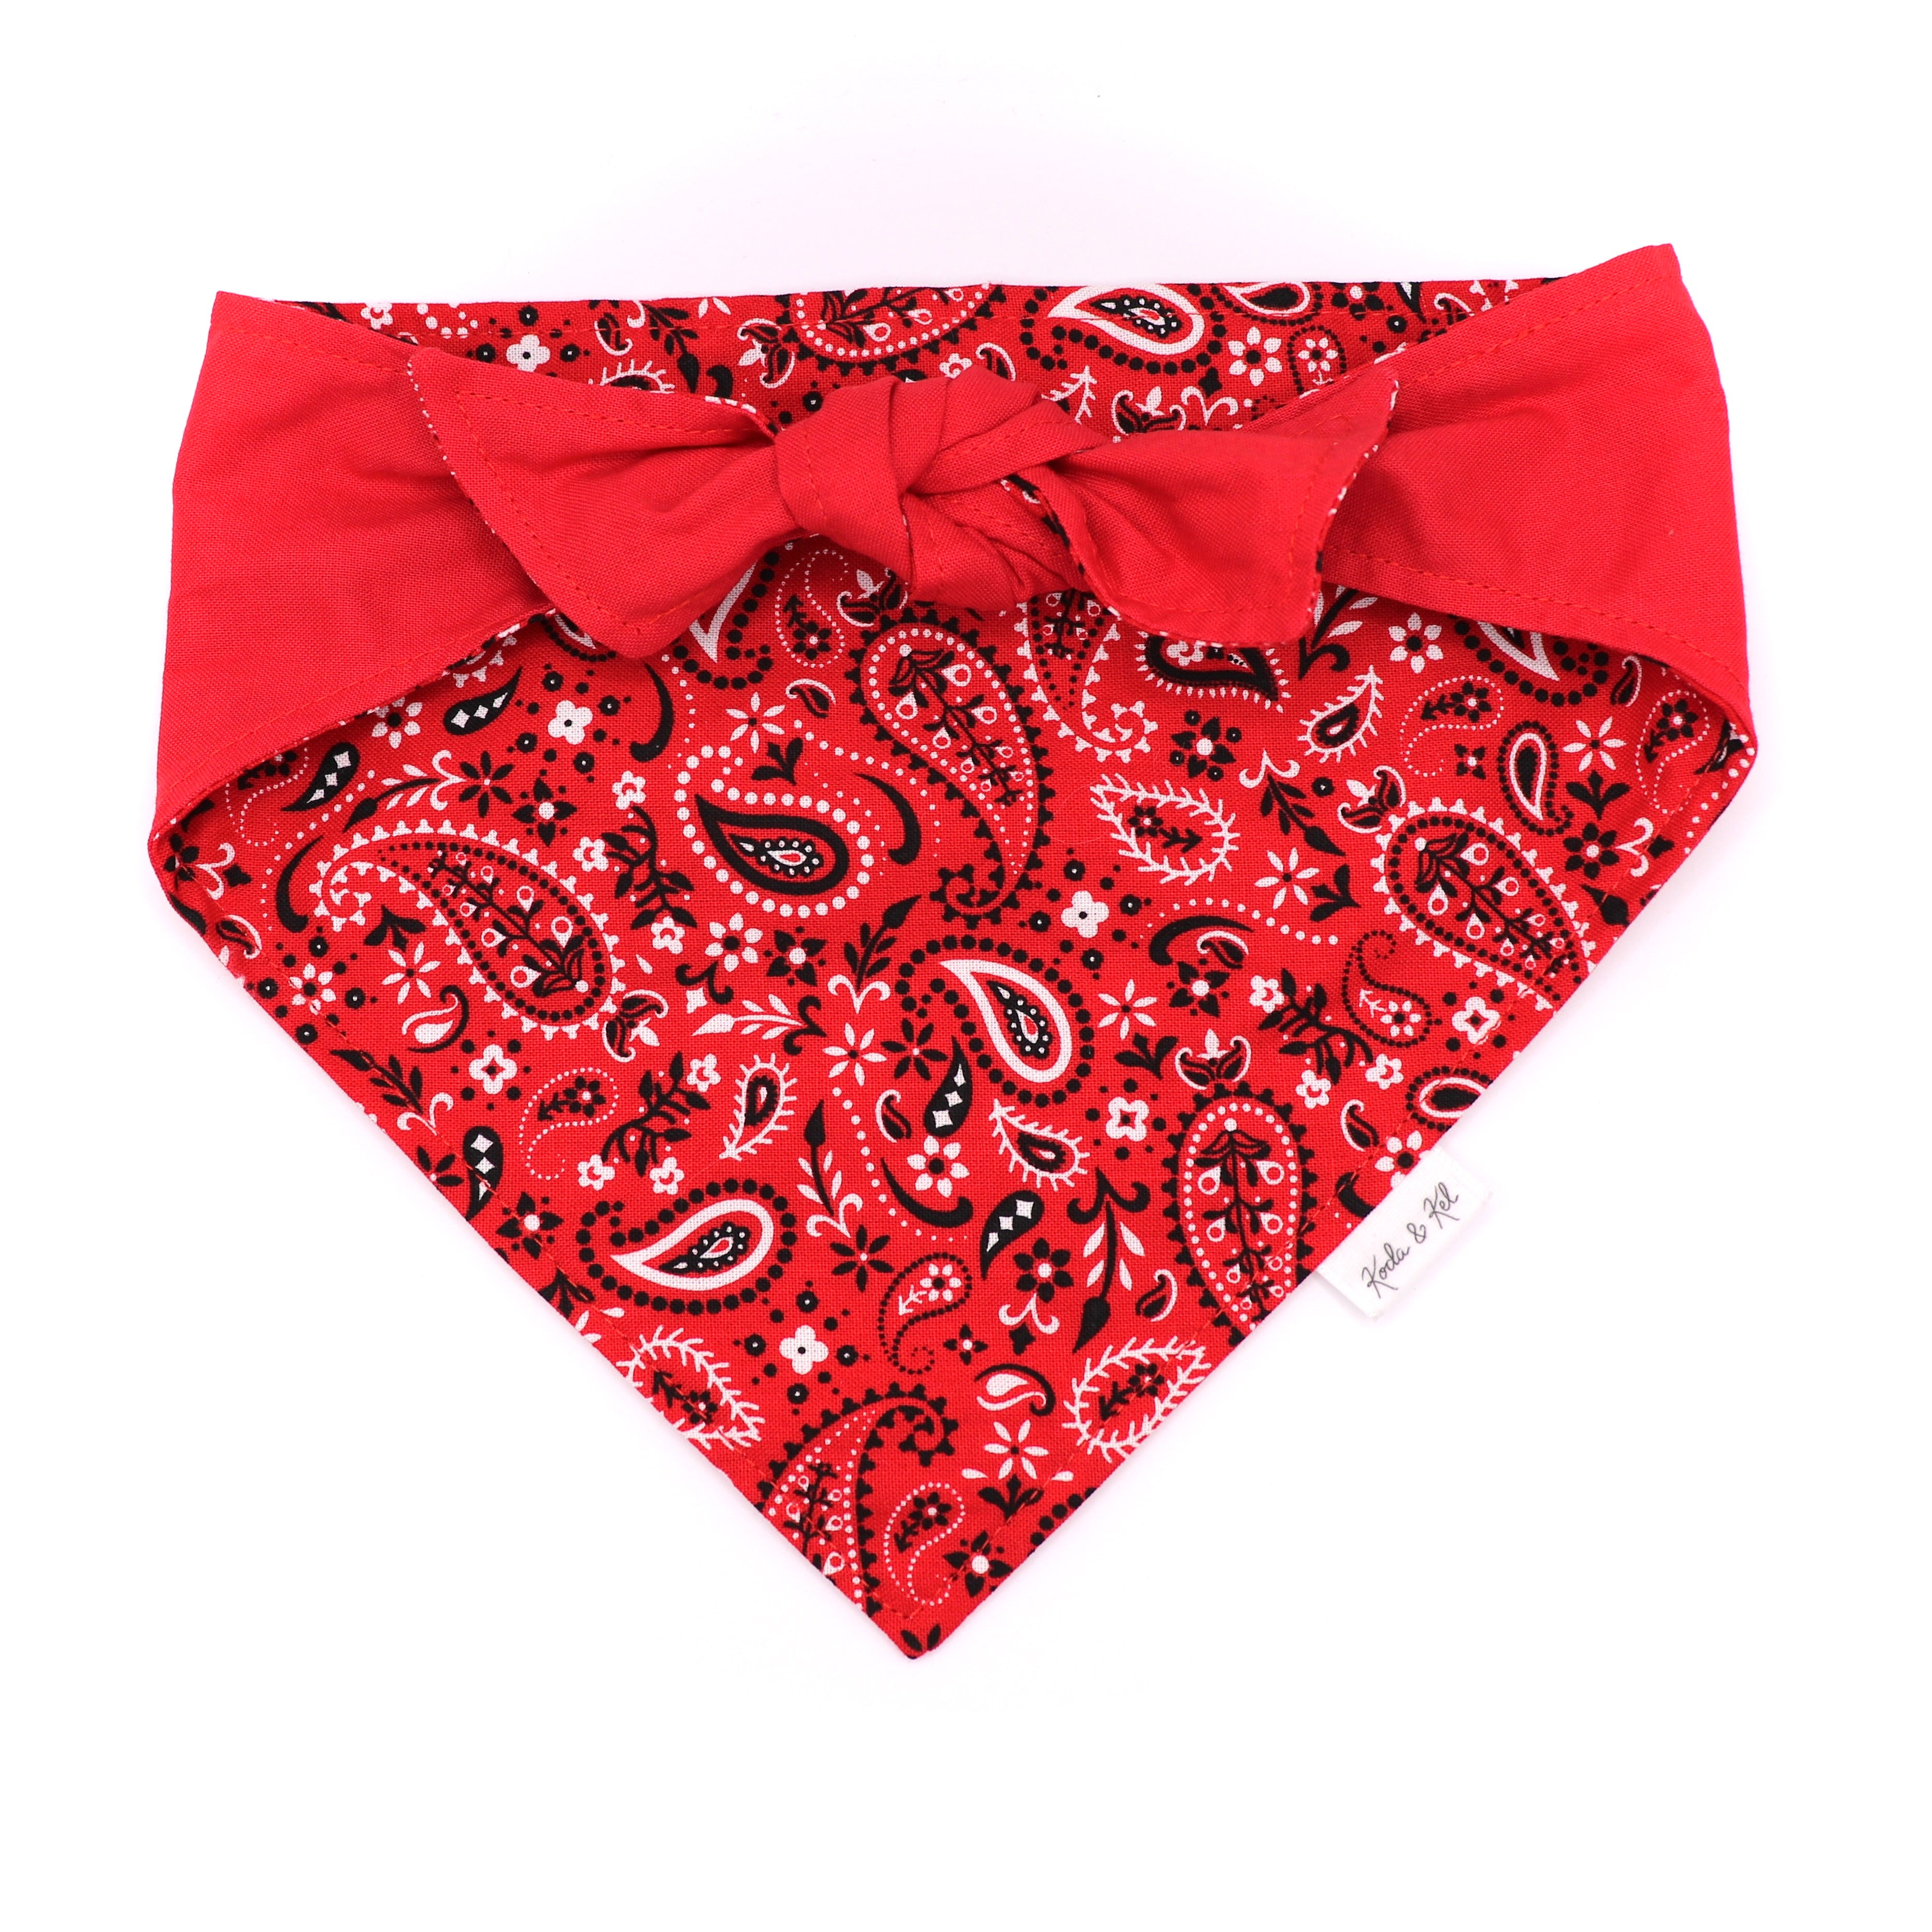 Red Paisley Tie & Snap Bandana